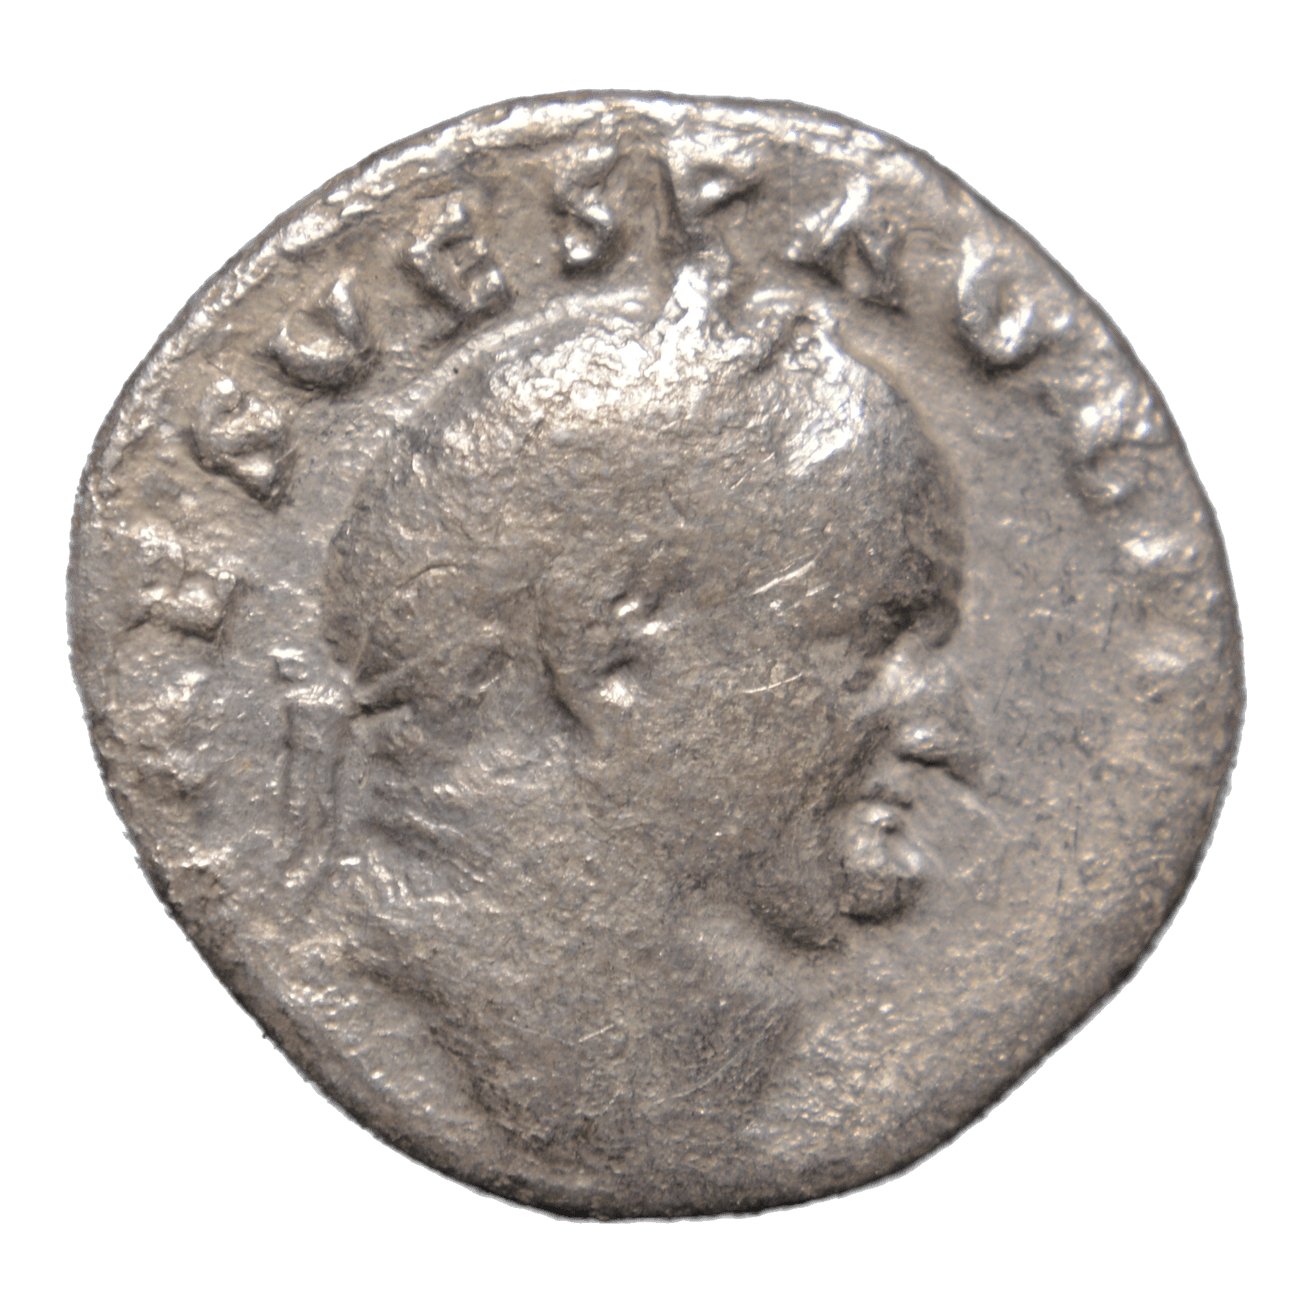 Vespasian 69-79AD - Rome. AR Denarius - Premium Ancient Coins - denarius